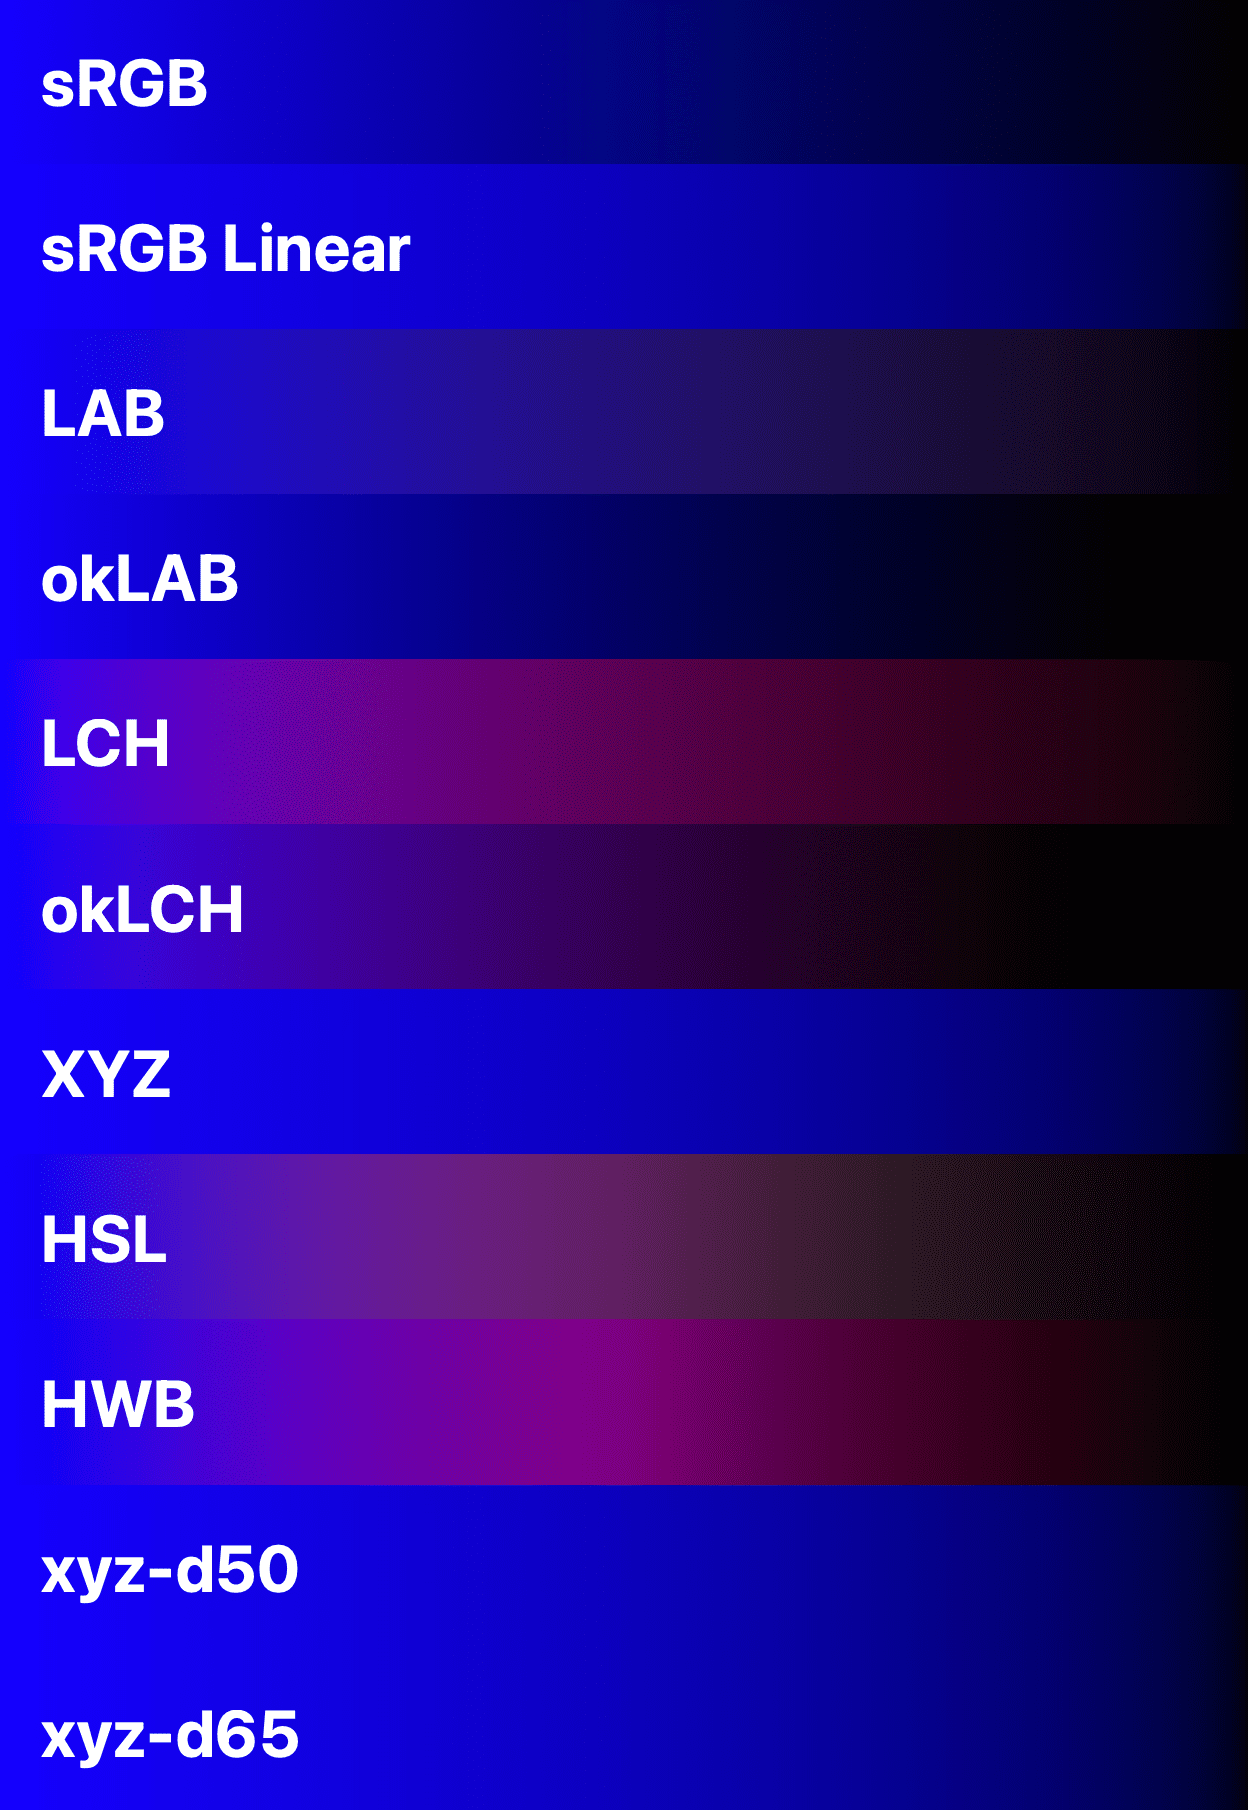 Mavi ile siyahı karşılaştıran 11 renk alanı gösteriliyor.